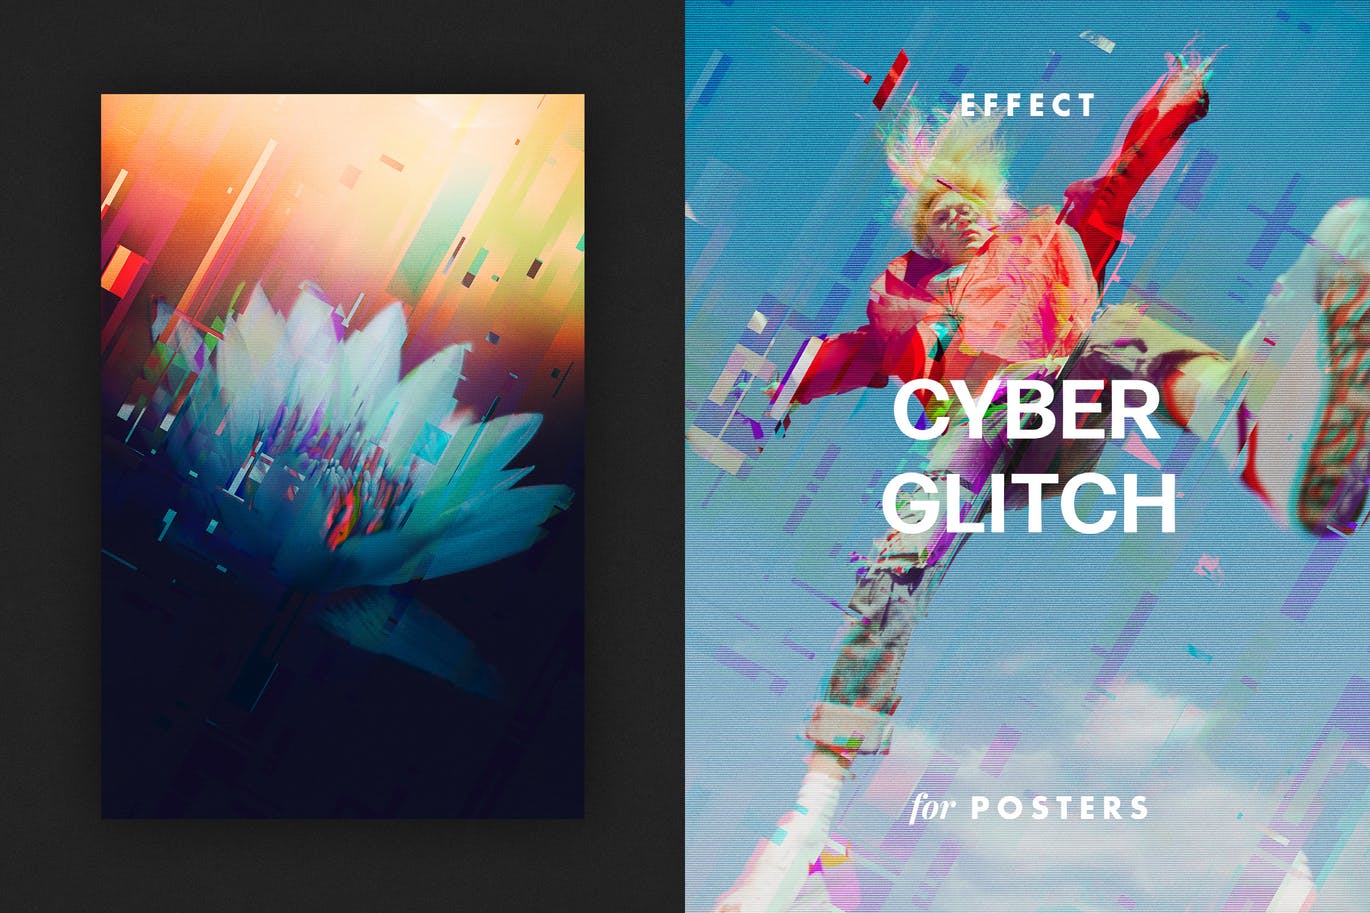 破碎故障失真效果海报模板 Cyber Glitch Effect for Posters 插件预设 第1张